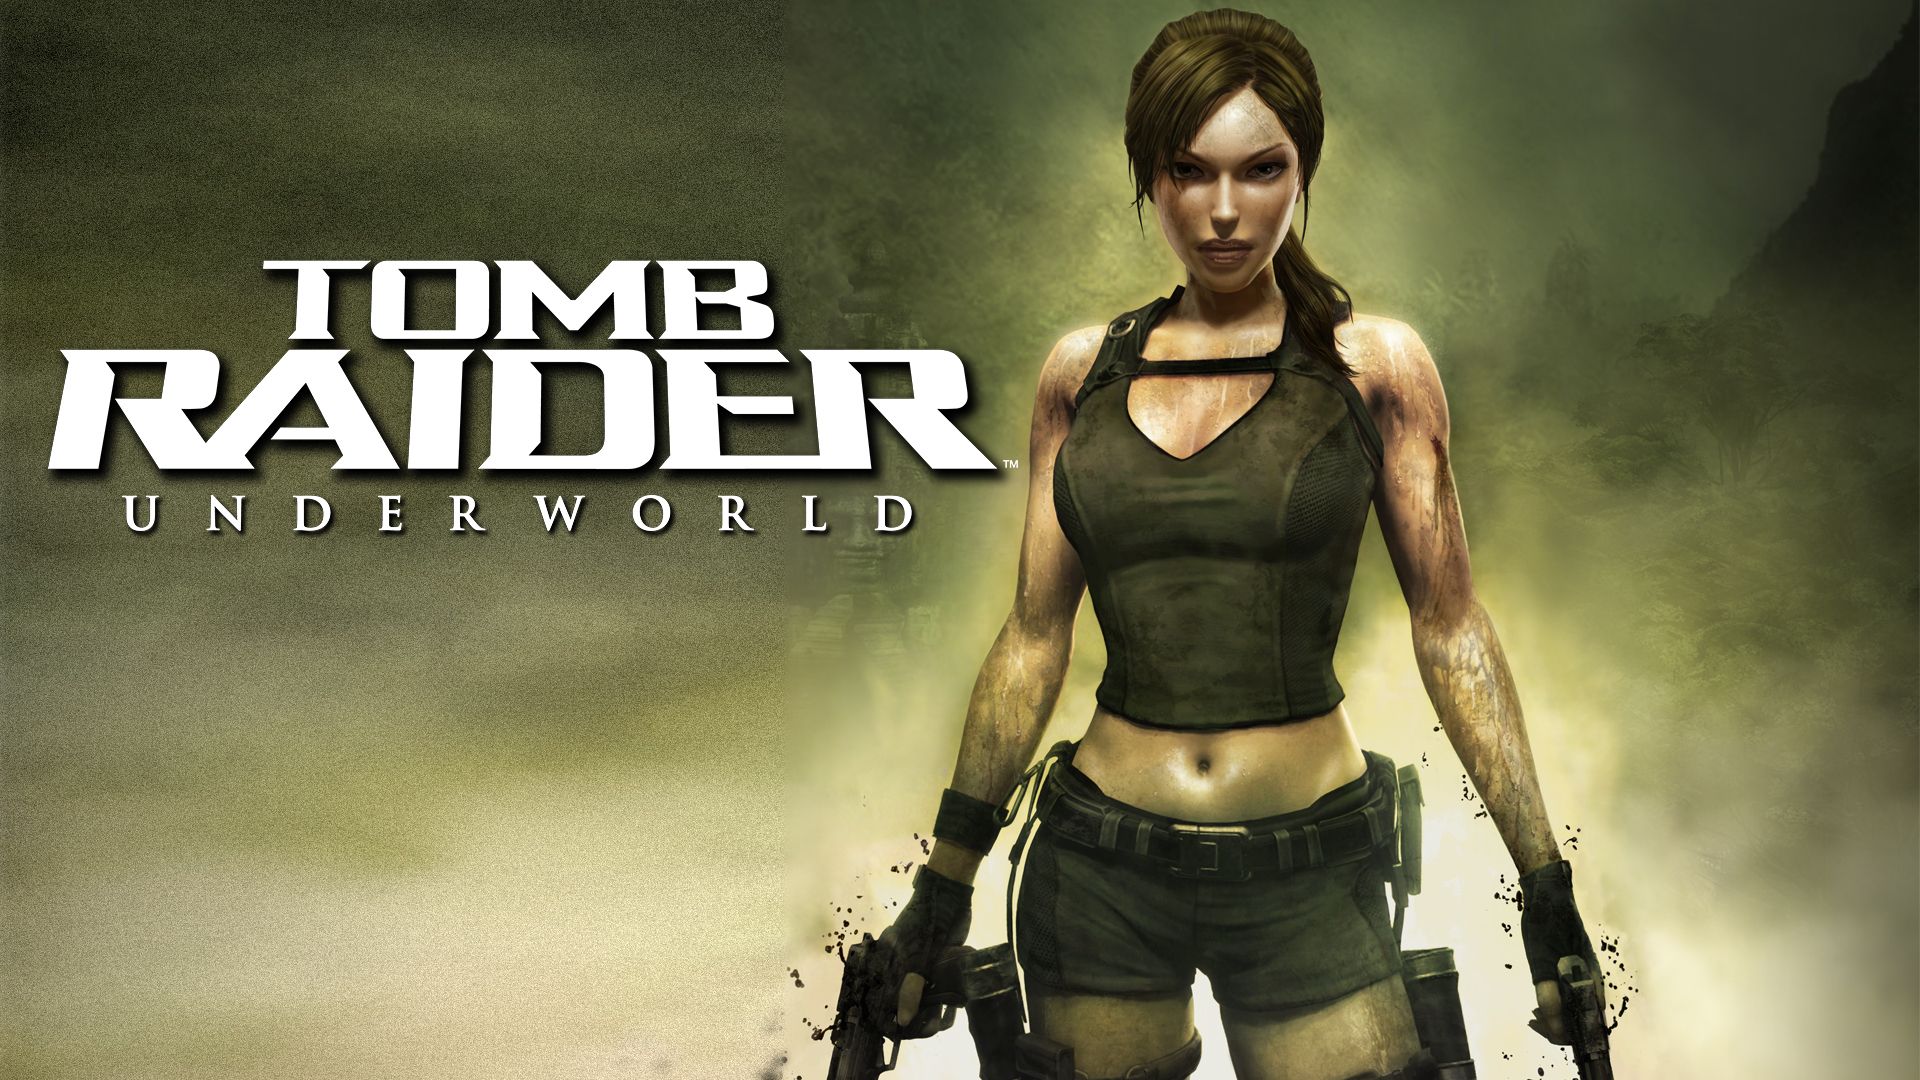 Прохождение игры Tomb Raider: Underworld # 6. HD - Full 1080p. (Русская версия игры)